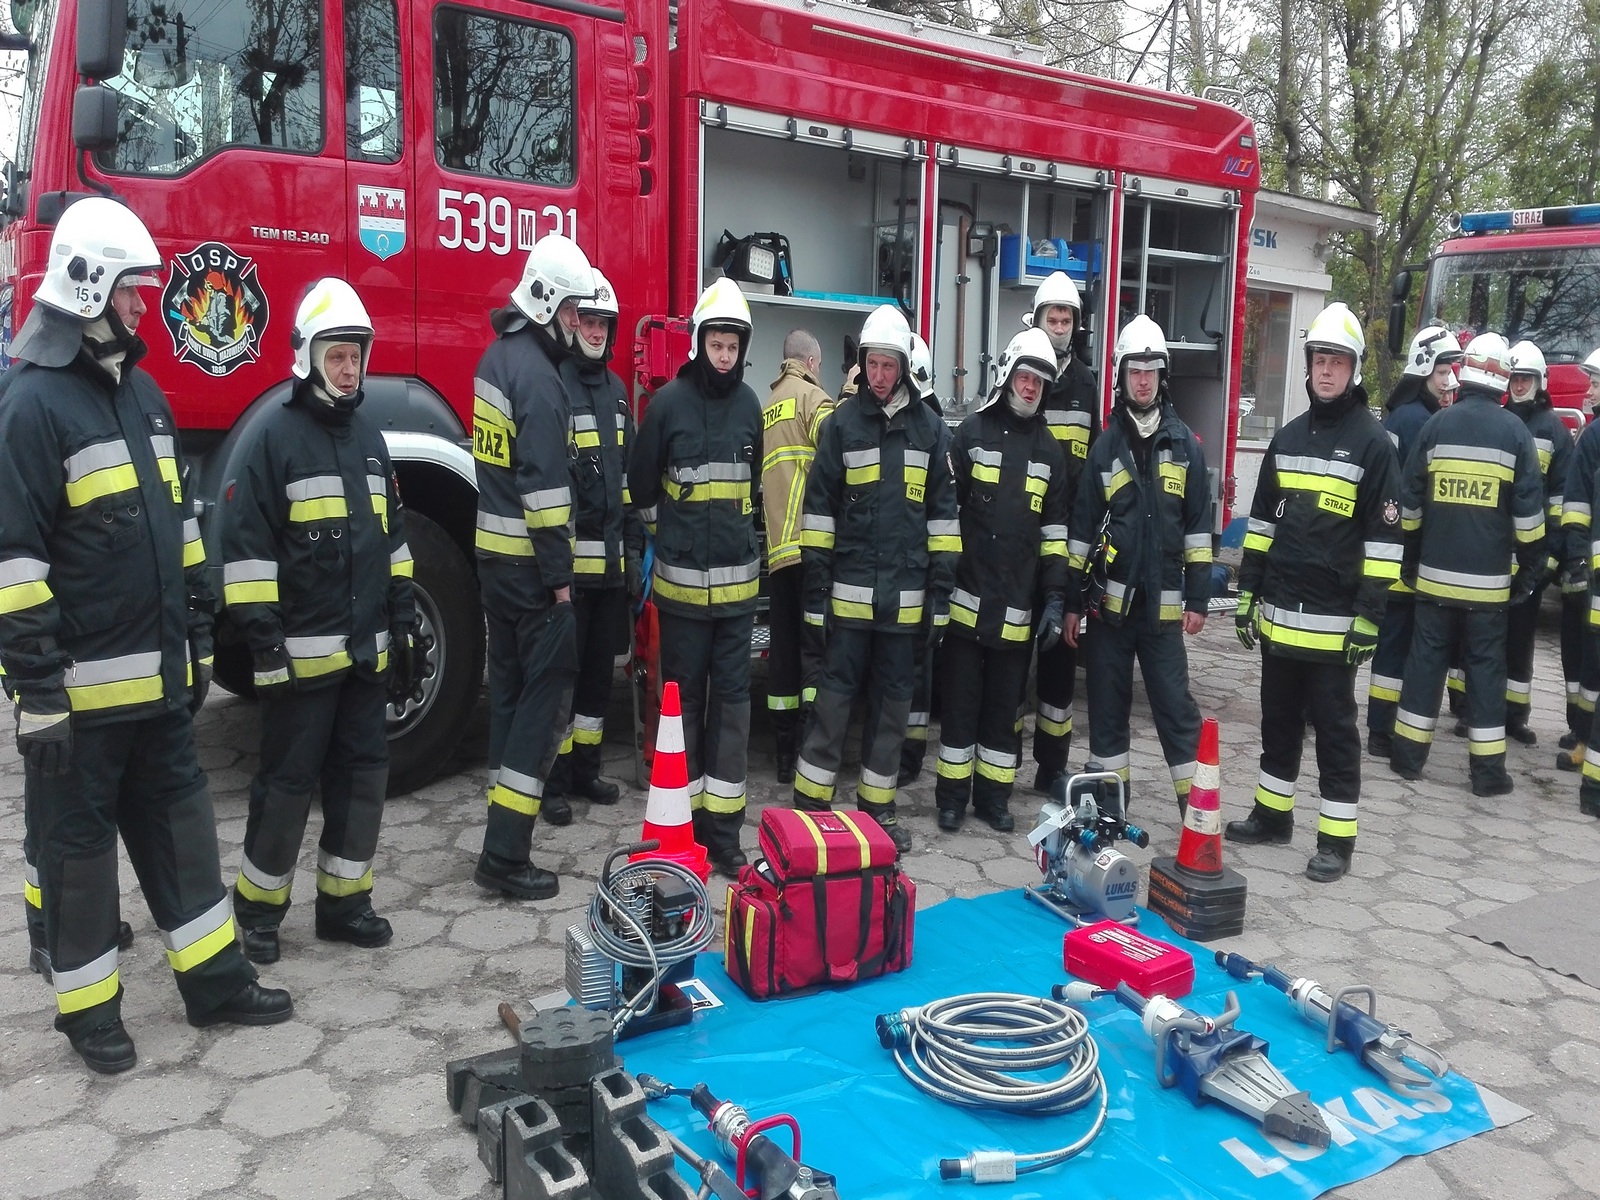 Zdjęcie przedstawia grupę strażaków OSP na tle samochodów pożarniczych, zebranych wokół sprzętu ratowniczego leżącego na niebieskiej plandece.